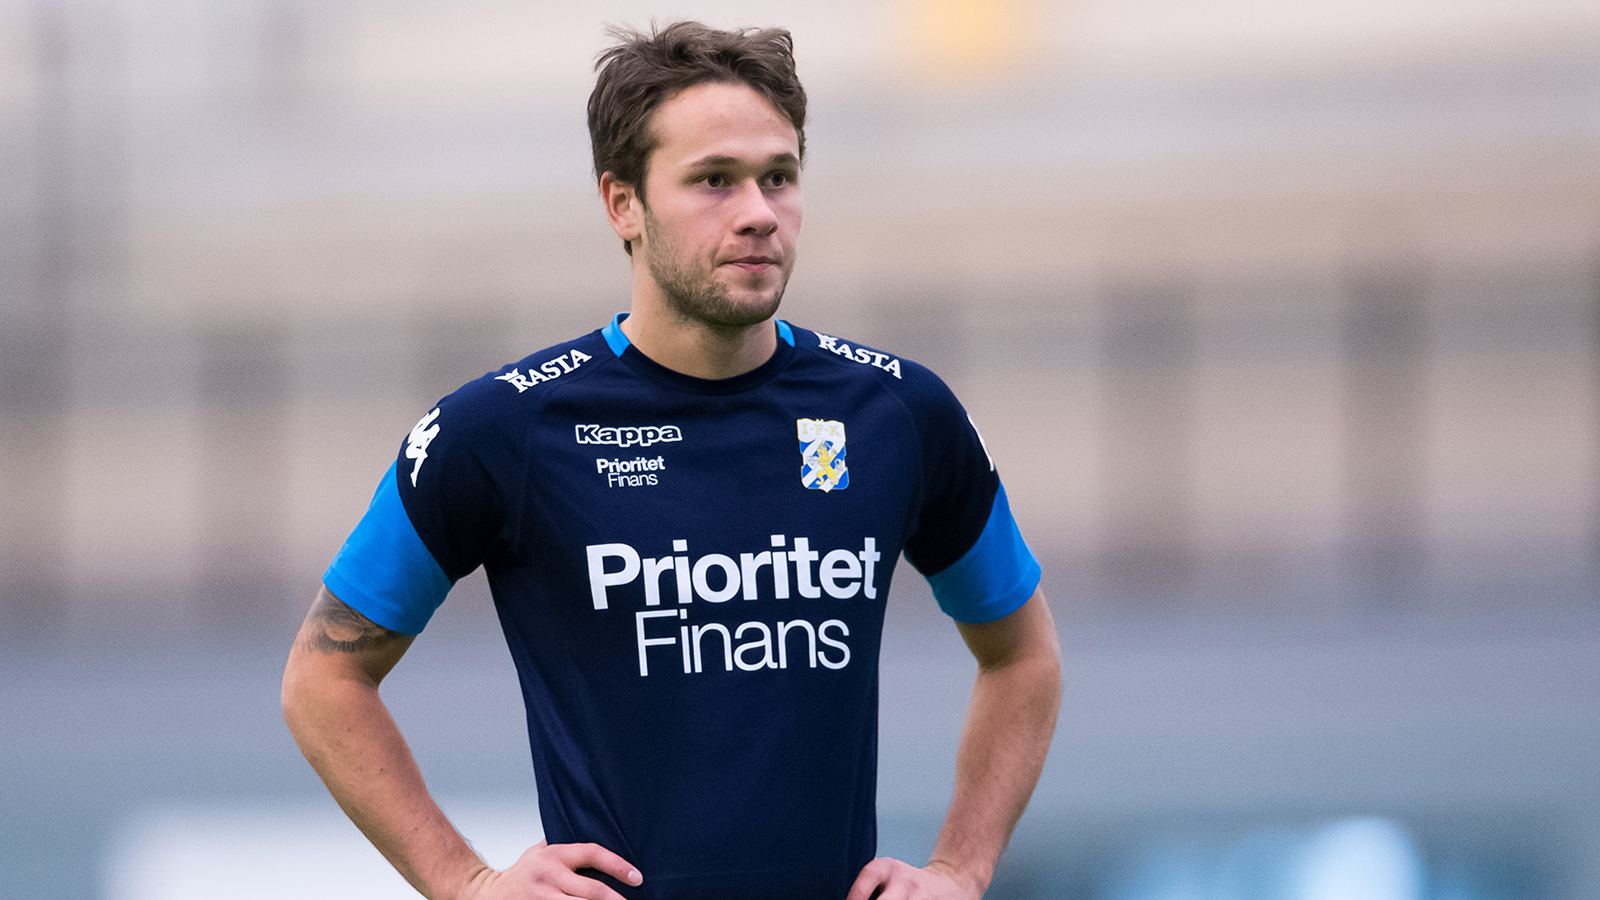 180117 Andreas Öhman under en träning med IFK Göteborg den 17 januari 2018 i Göteborg.